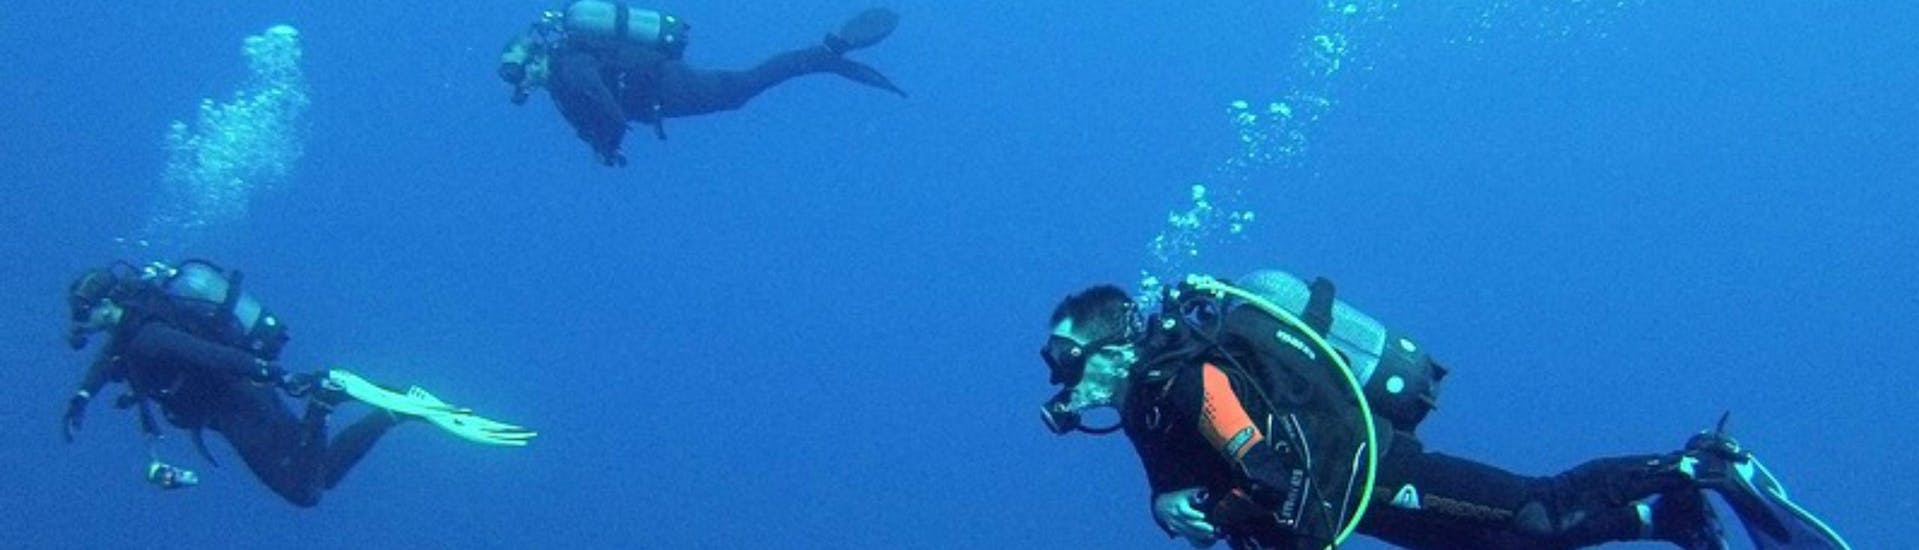 PADI Discover Scuba Diving in Marsalforn in Gozo.